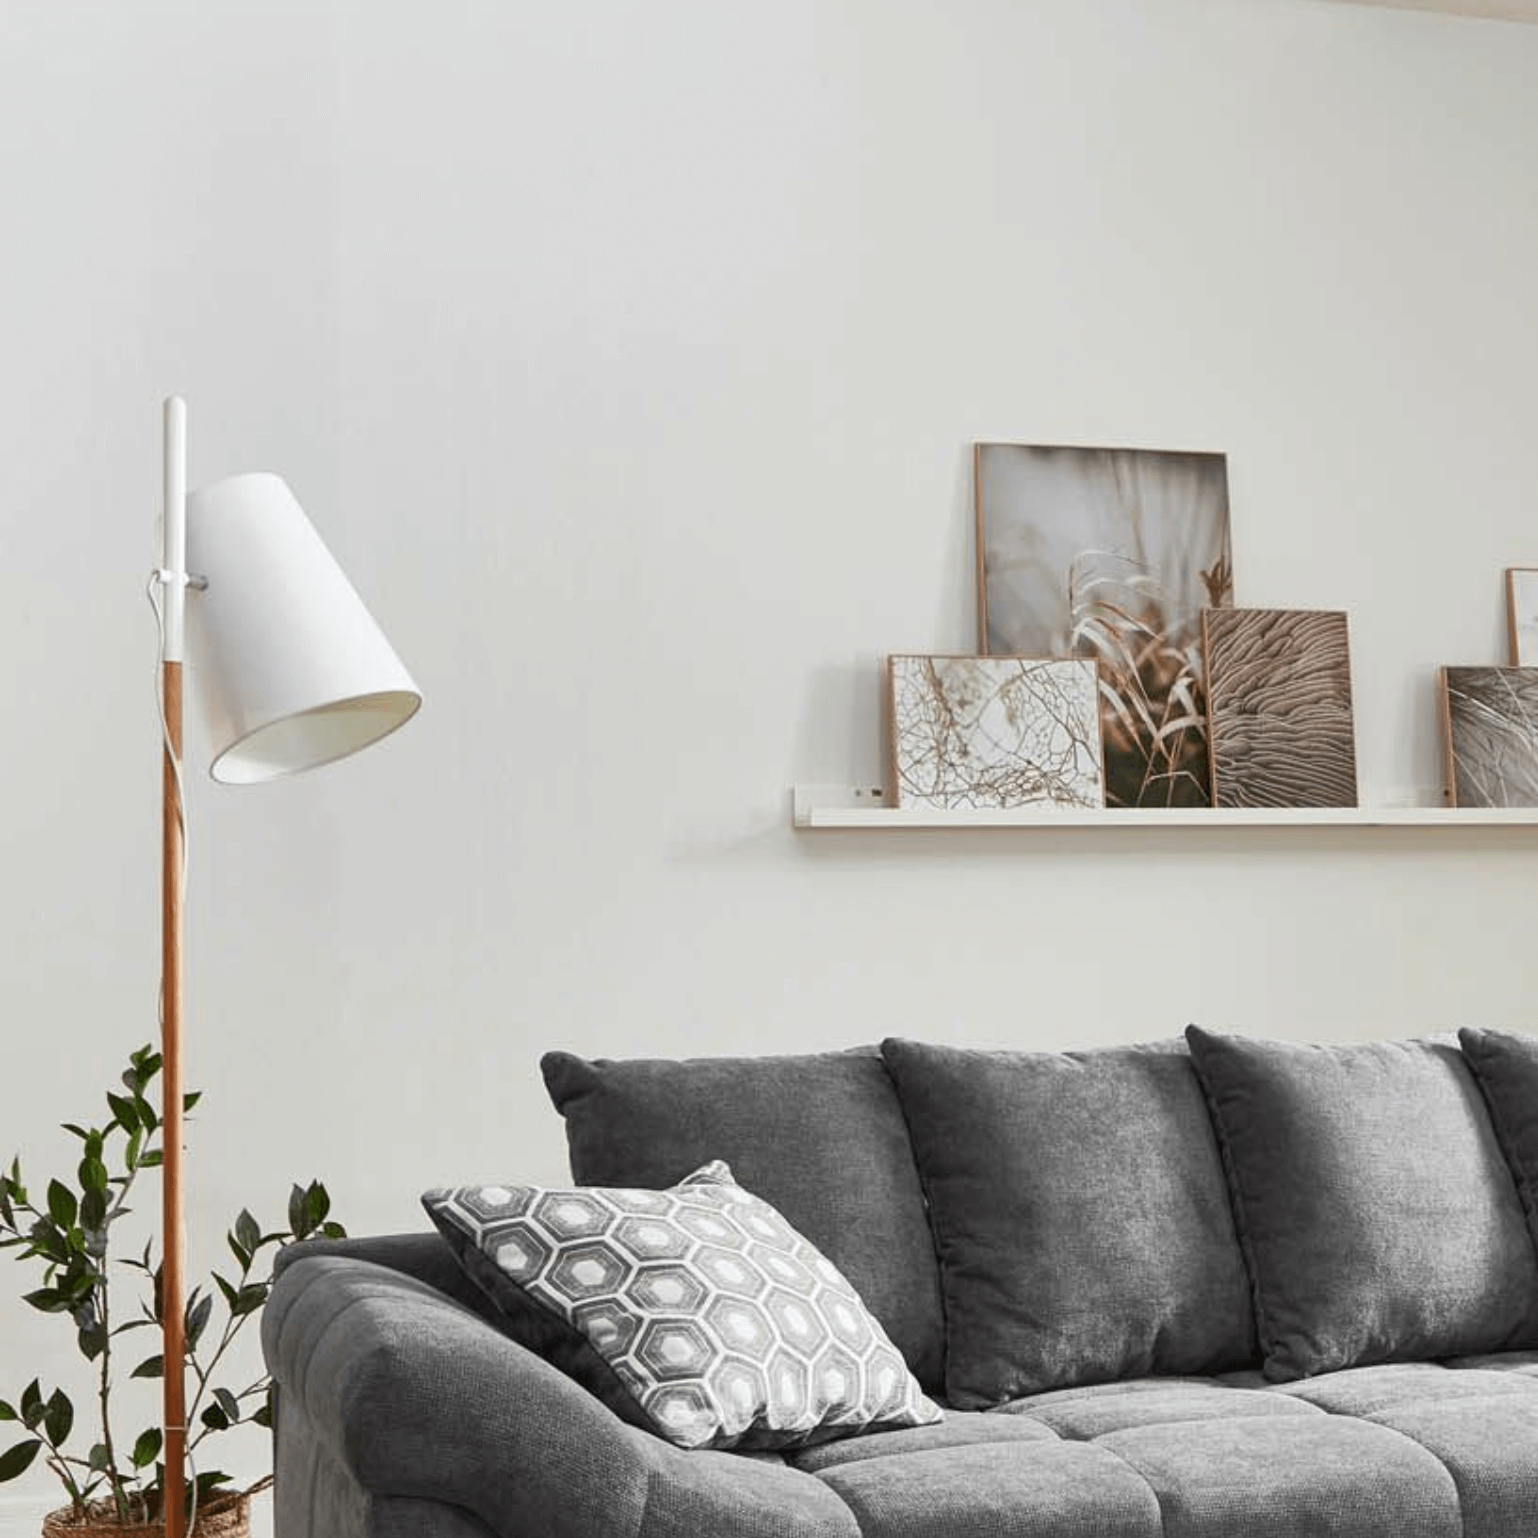 "Lampe sur pied blanche moderne pour ton salon : éclairage élégant de style scandinave. Crée une atmosphère chaleureuse avec ce luminaire stylé et fonctionnel".